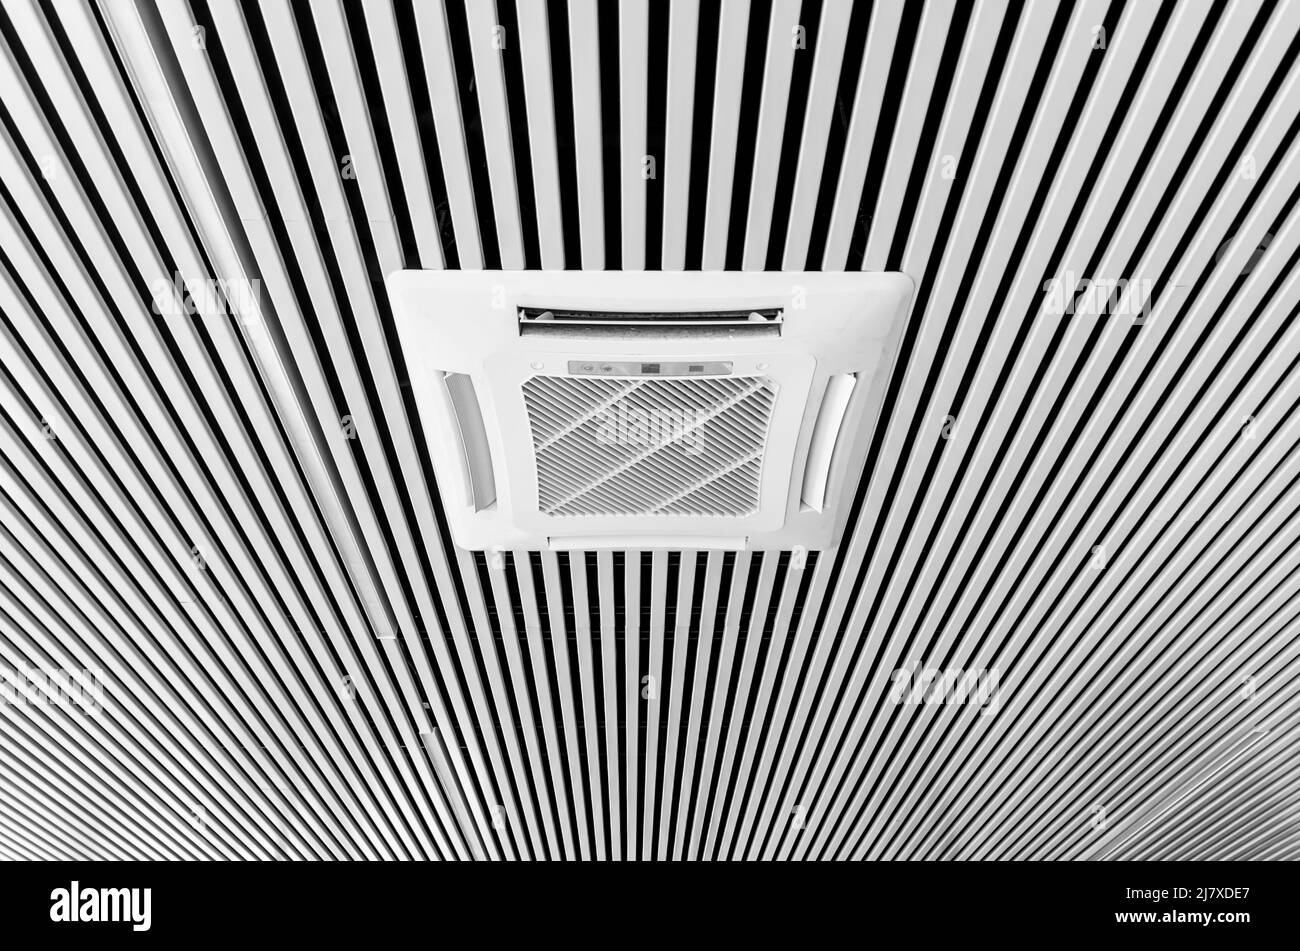 Klimaanlage, die in den Decken im Bürobereich montiert ist. Moderne Decken sind aus weißen und schwarzen Streifen gestaltet. Stockfoto